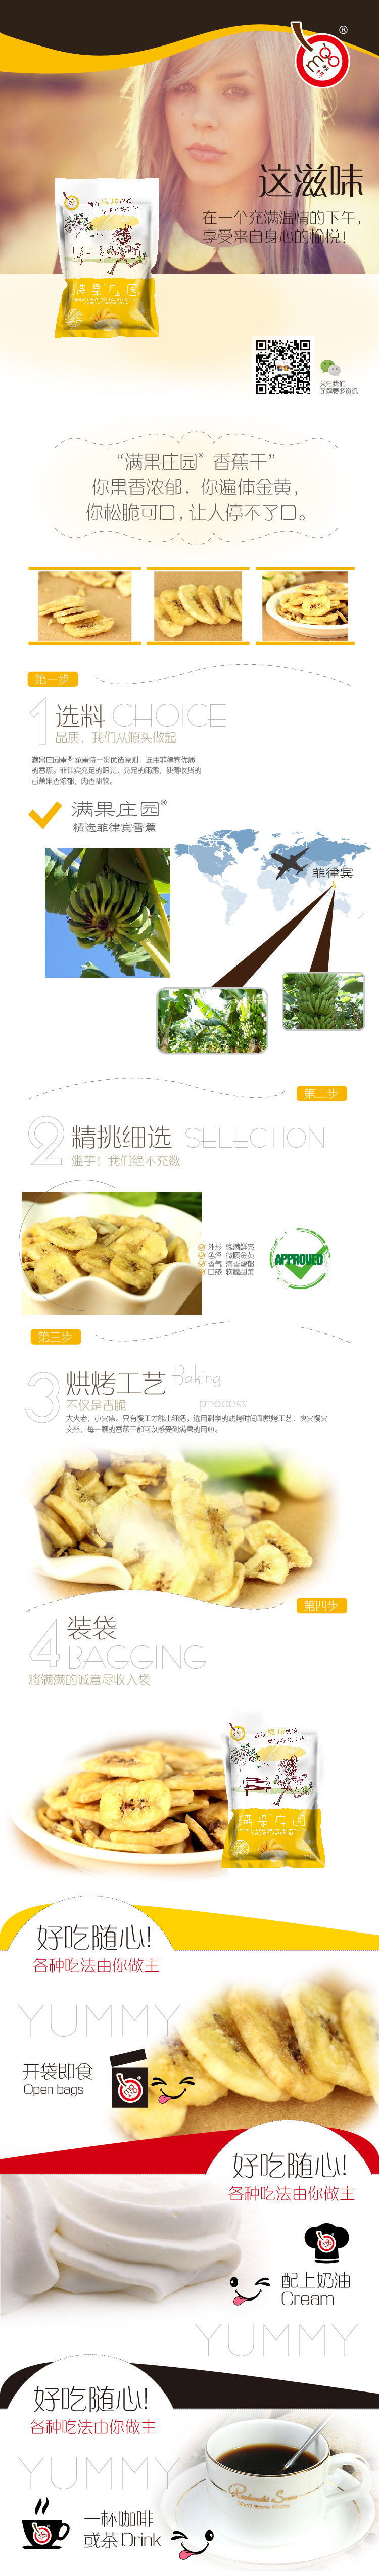 满果 香蕉片 80g/袋 泰国进口原料